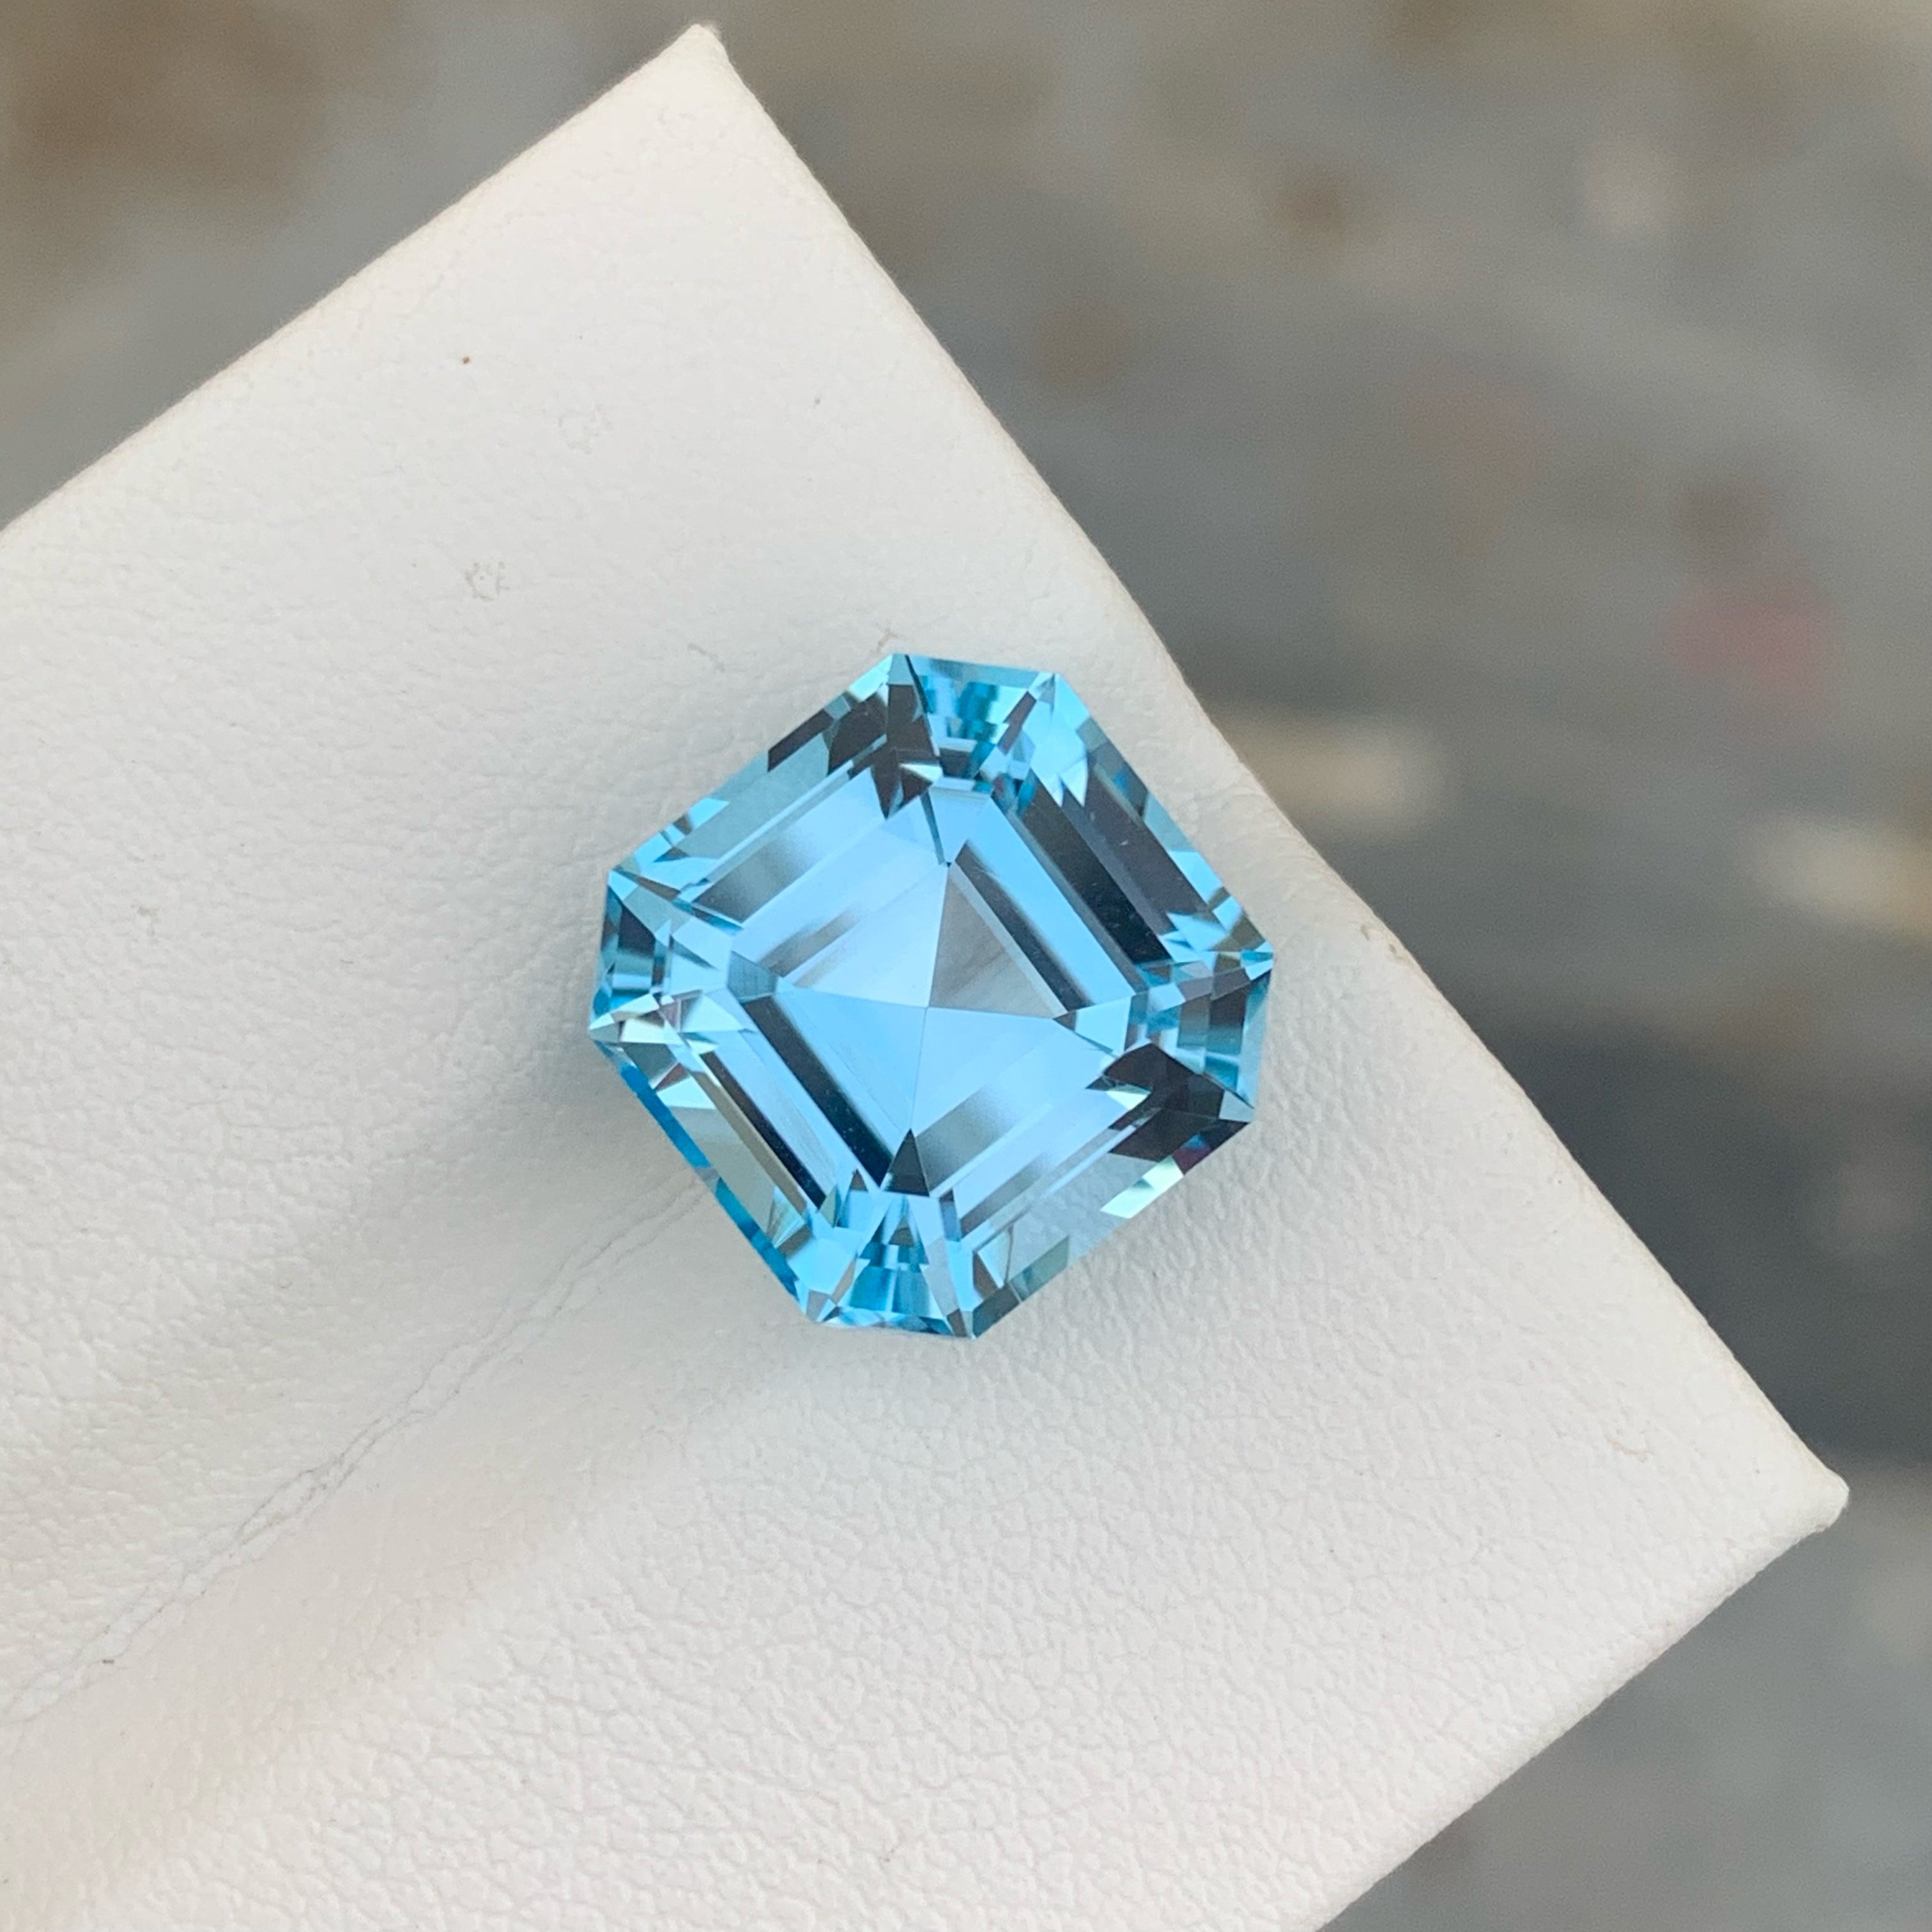 True Luxury Swiss Blue Topaz 12.80 carats Asscher Cut Natural Madagascar's Gemstone